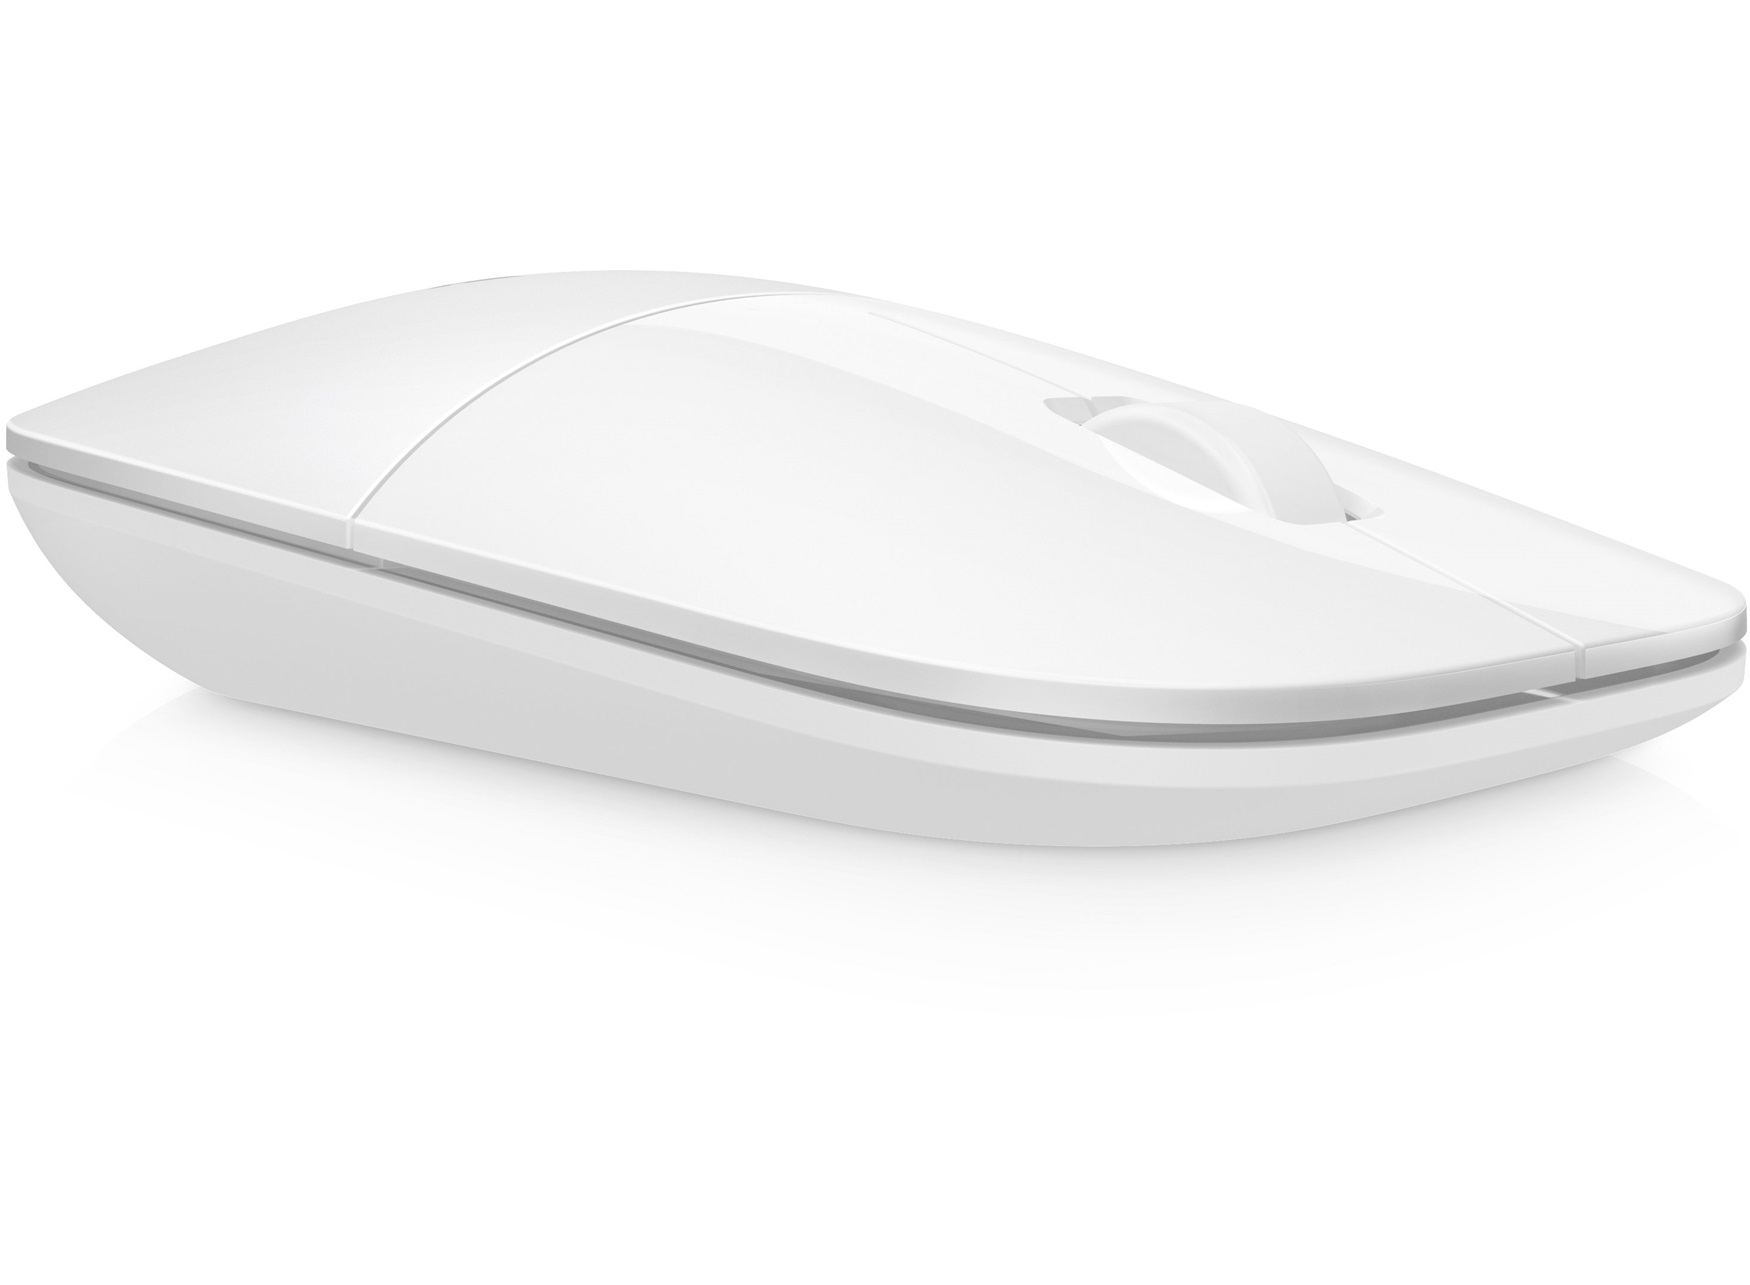 HP Z3700 mouse RF Wireless Ottico 1200 DPI Ambidestro